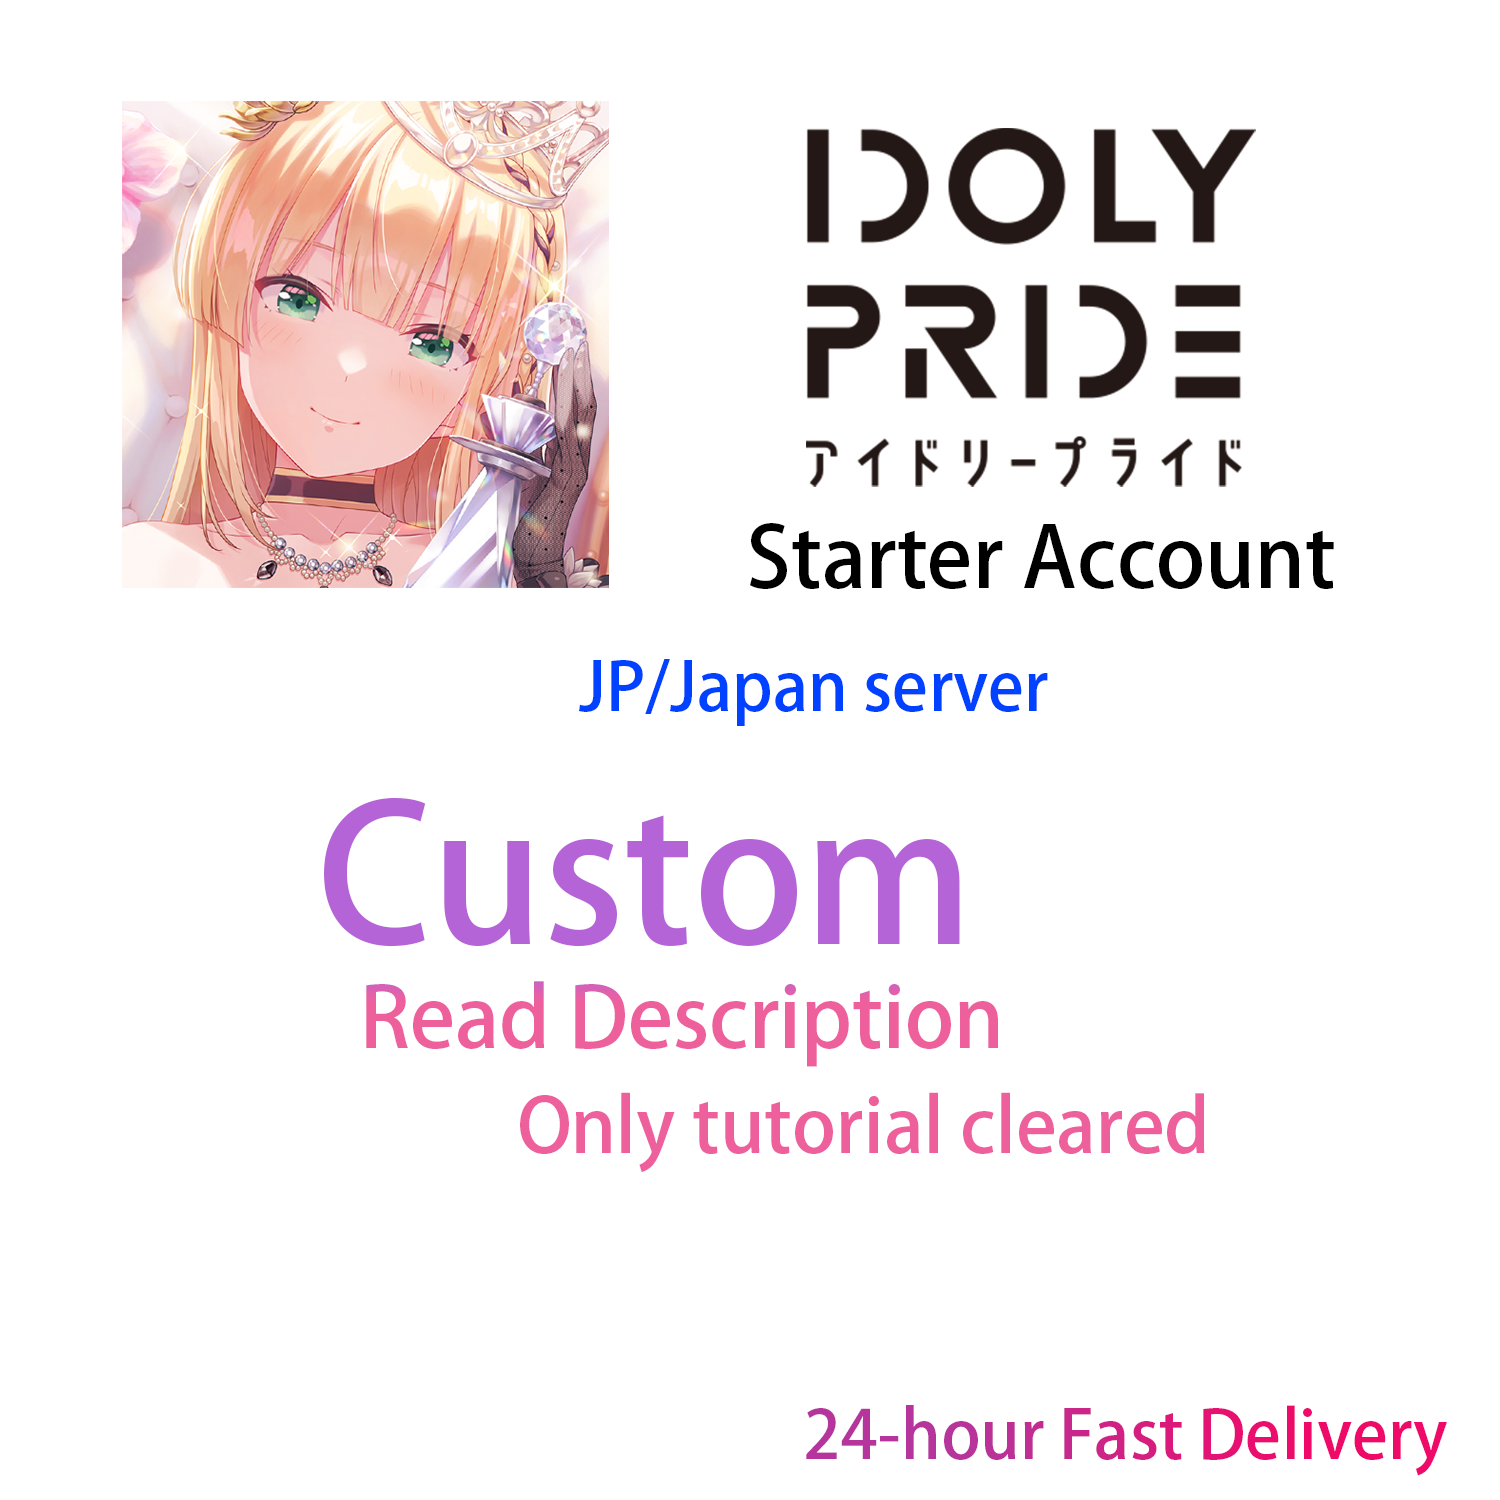 [JP] IDOLY PRIDE CUSTOM Starter Account-Mobile Games Starter